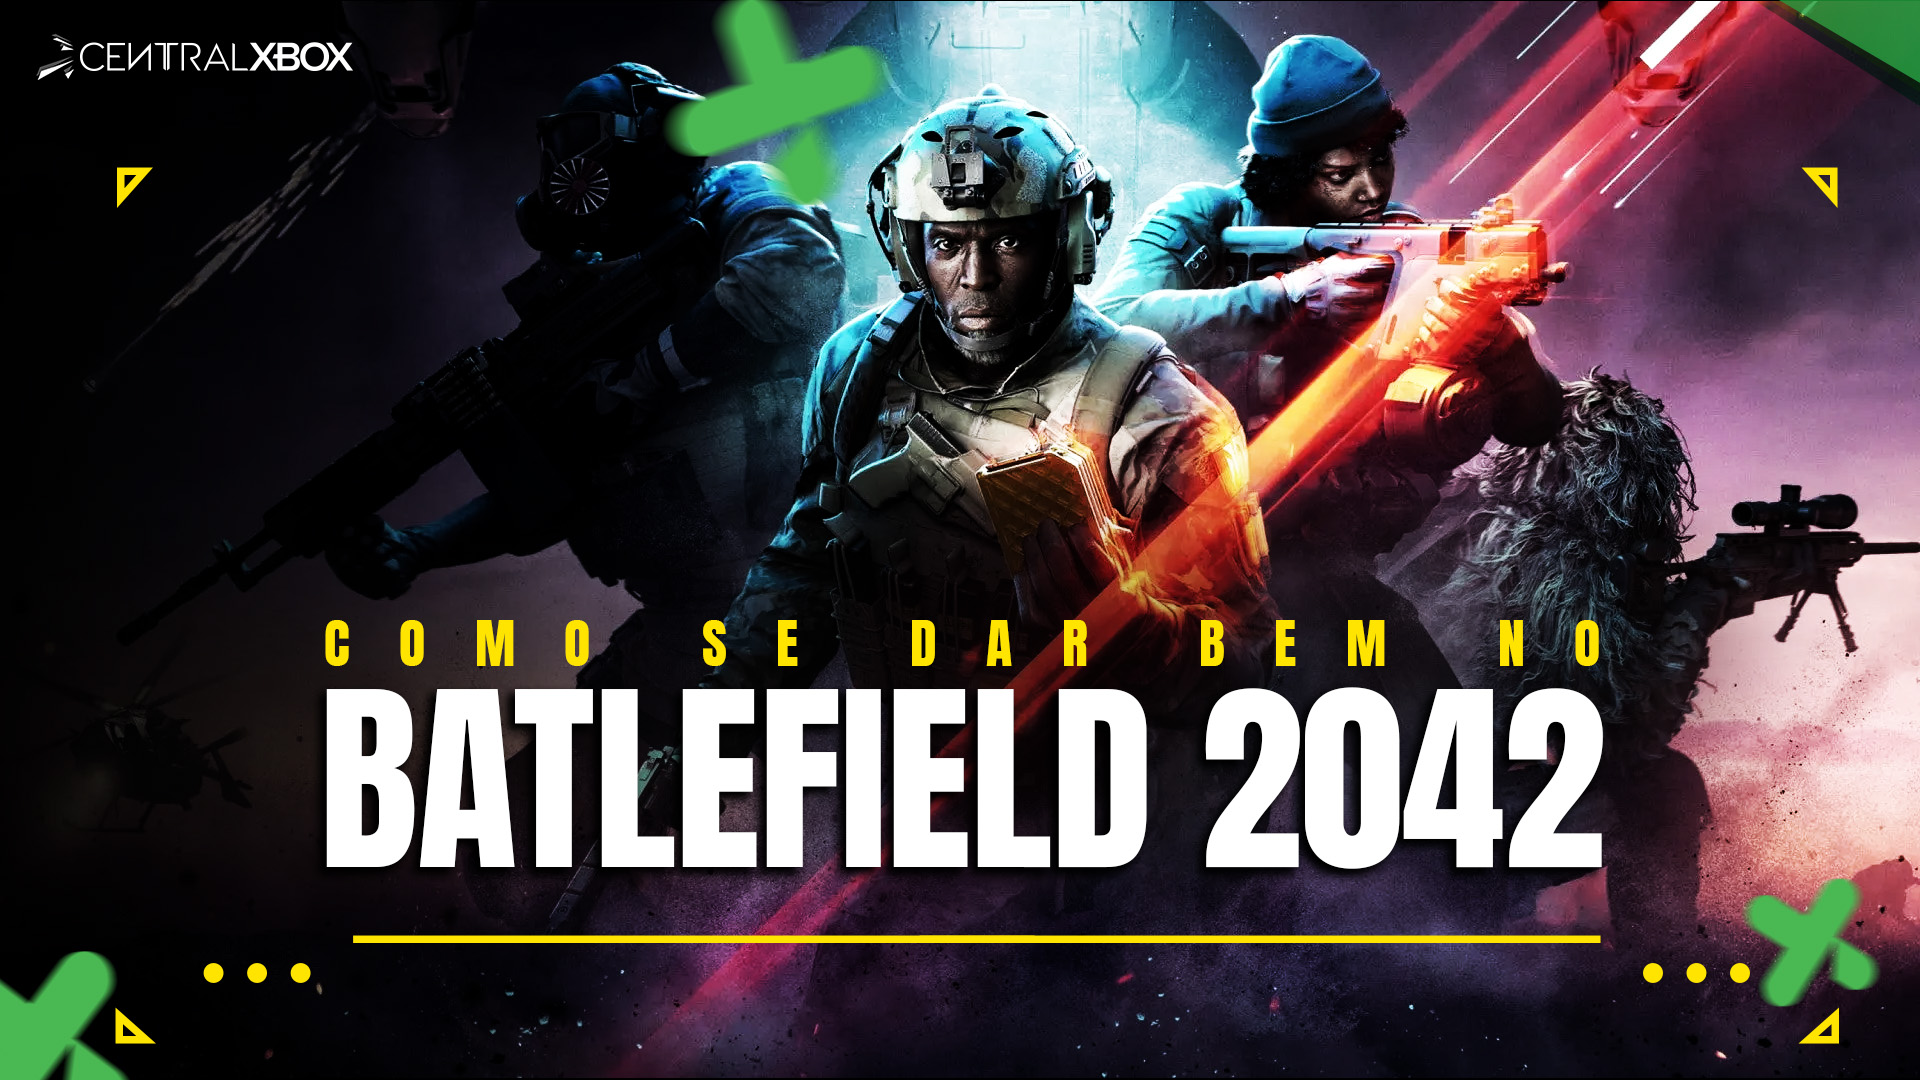 Hazard Zone muda tudo no Battlefield 2042